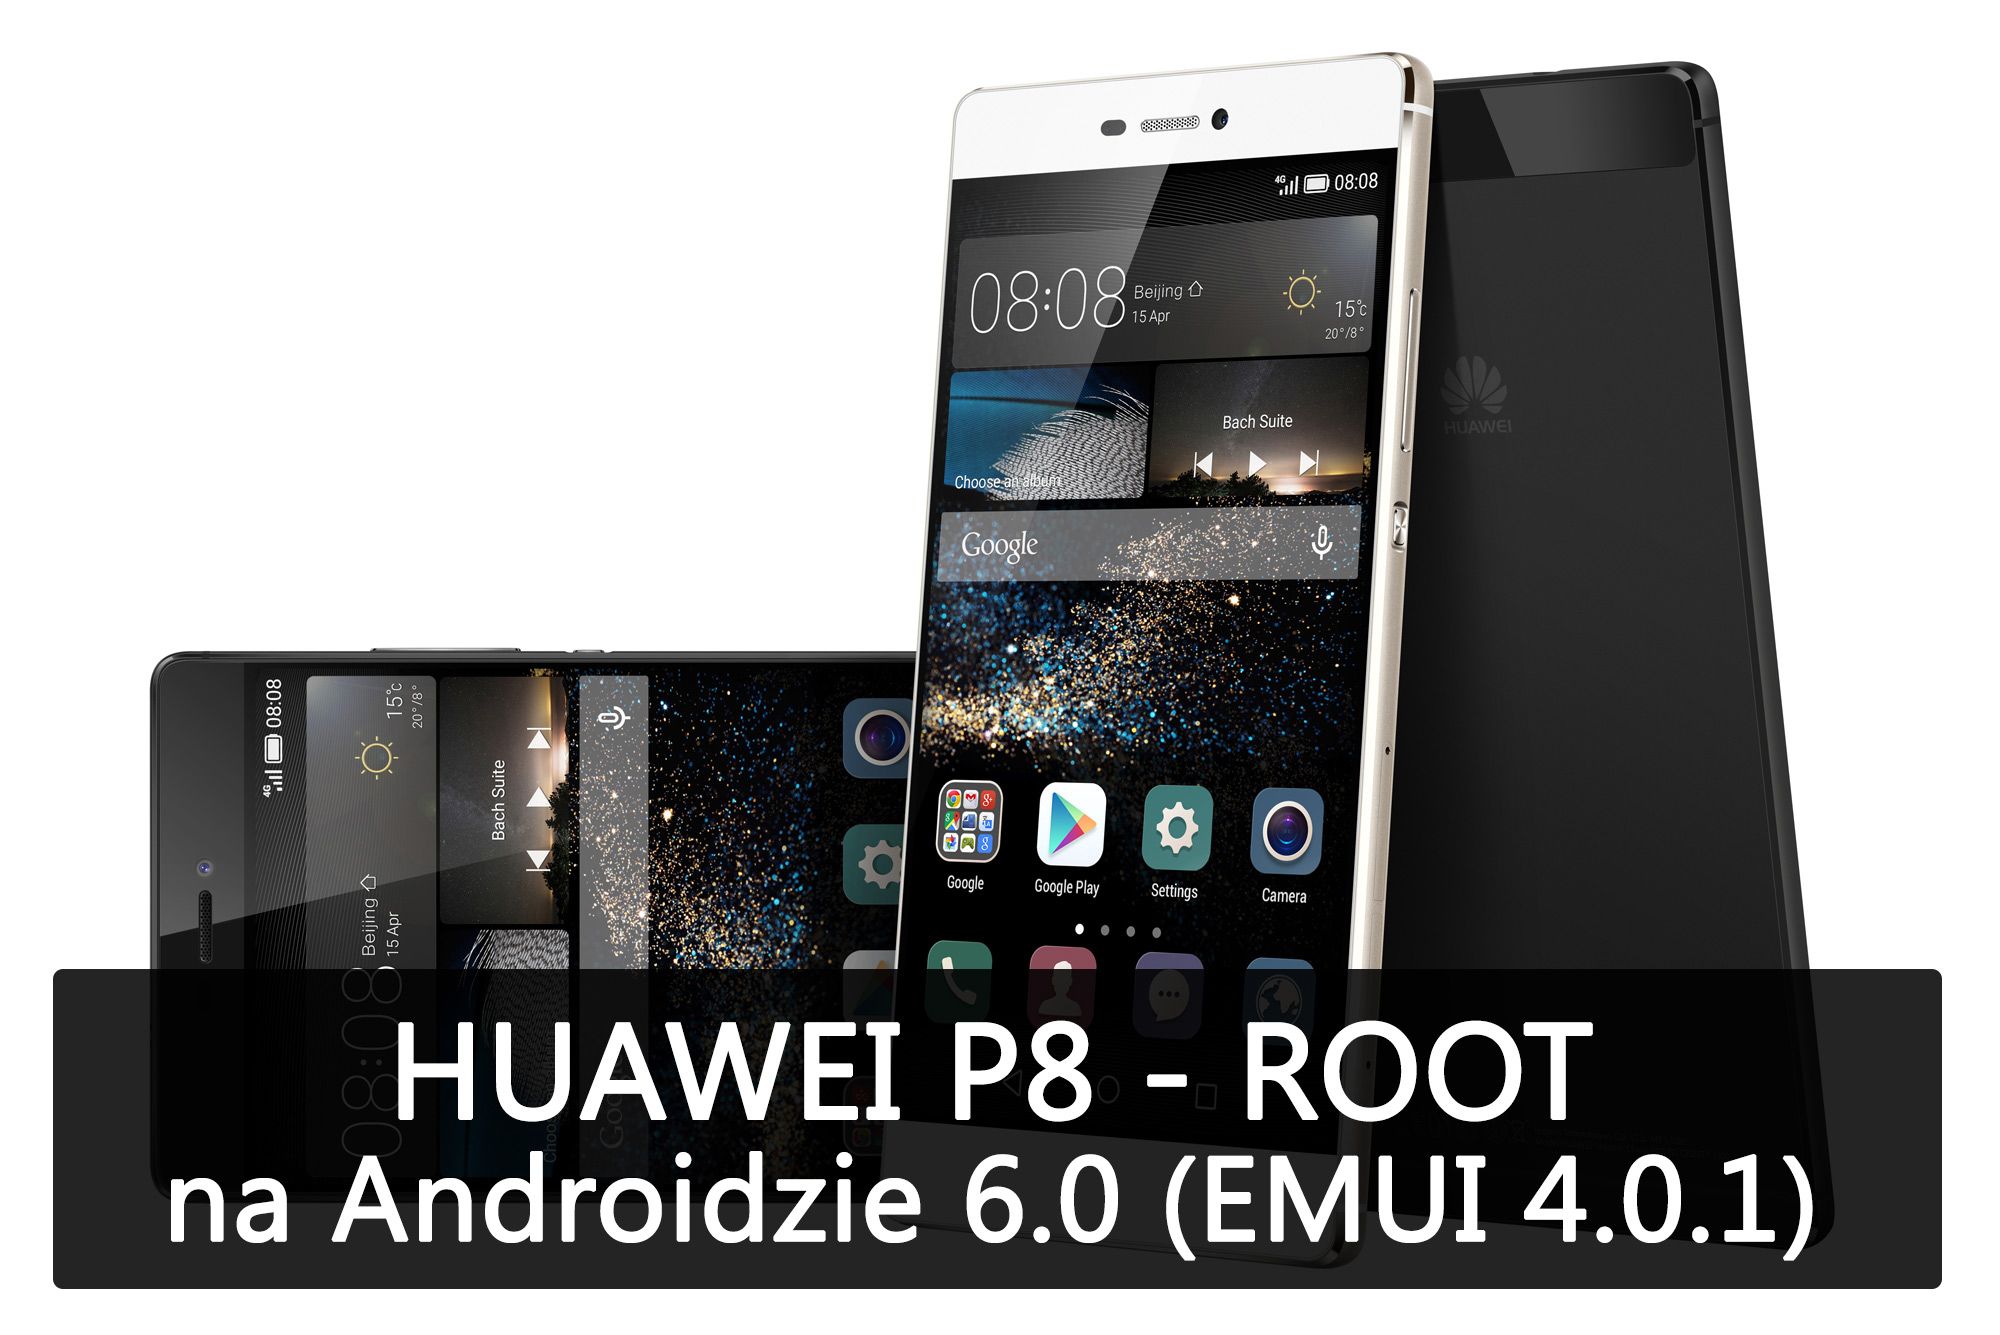 Huawei P8 - как сделать ROOT в Android 6.0